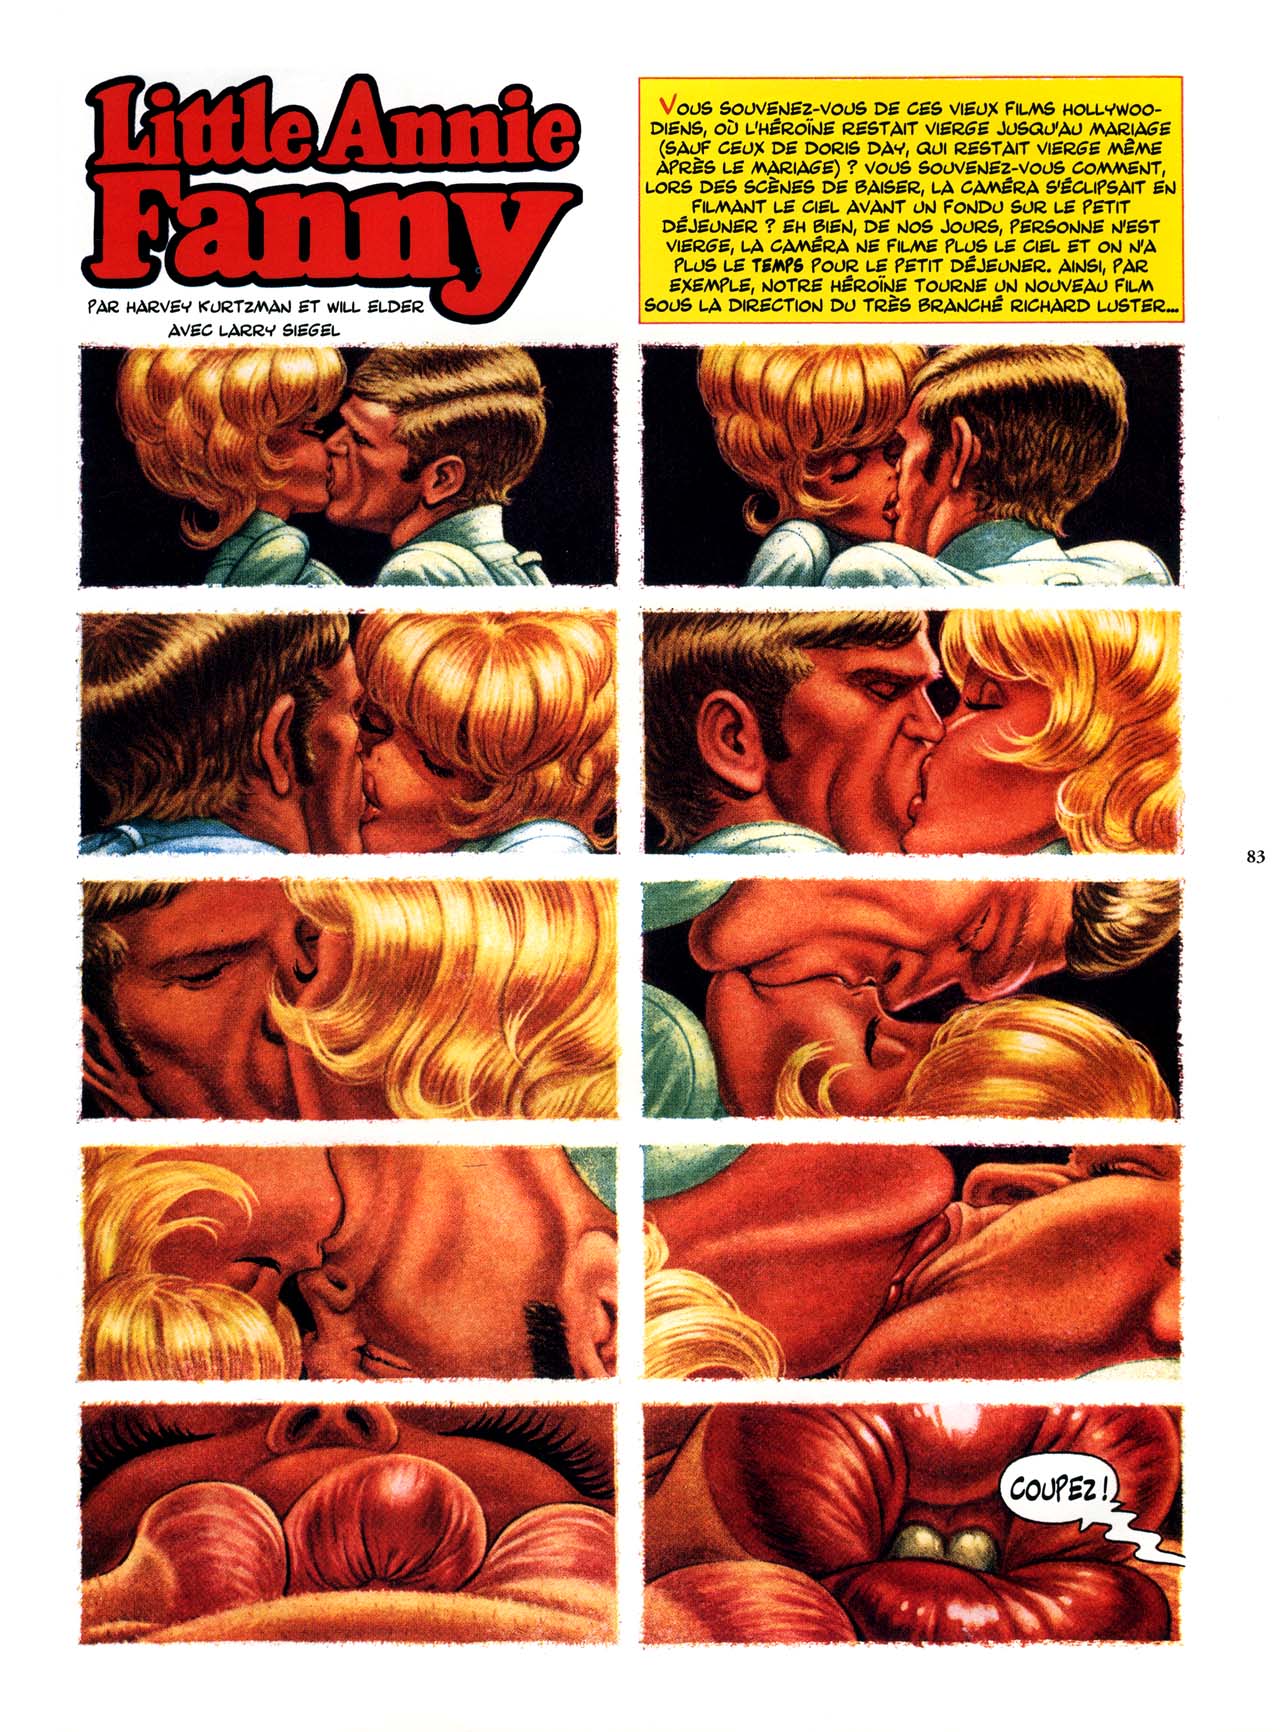 Playboys Little Annie Fanny Vol. 2 - 1965-1970 numero d'image 83